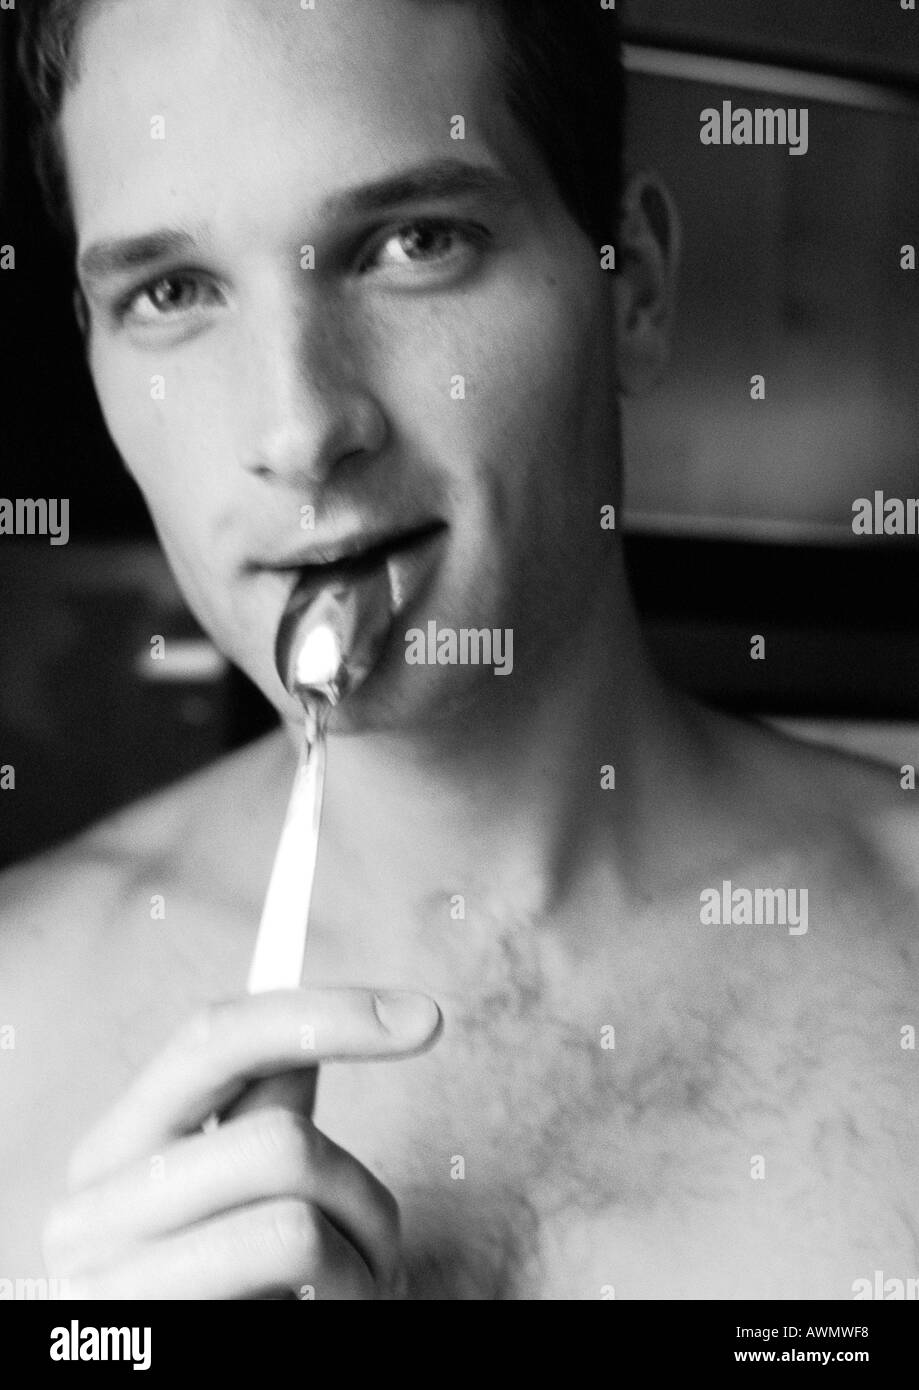 Drilliche Mann, der Löffel an Lippen, Blick in die Kamera, close-up, schwarz und weiß. Stockfoto